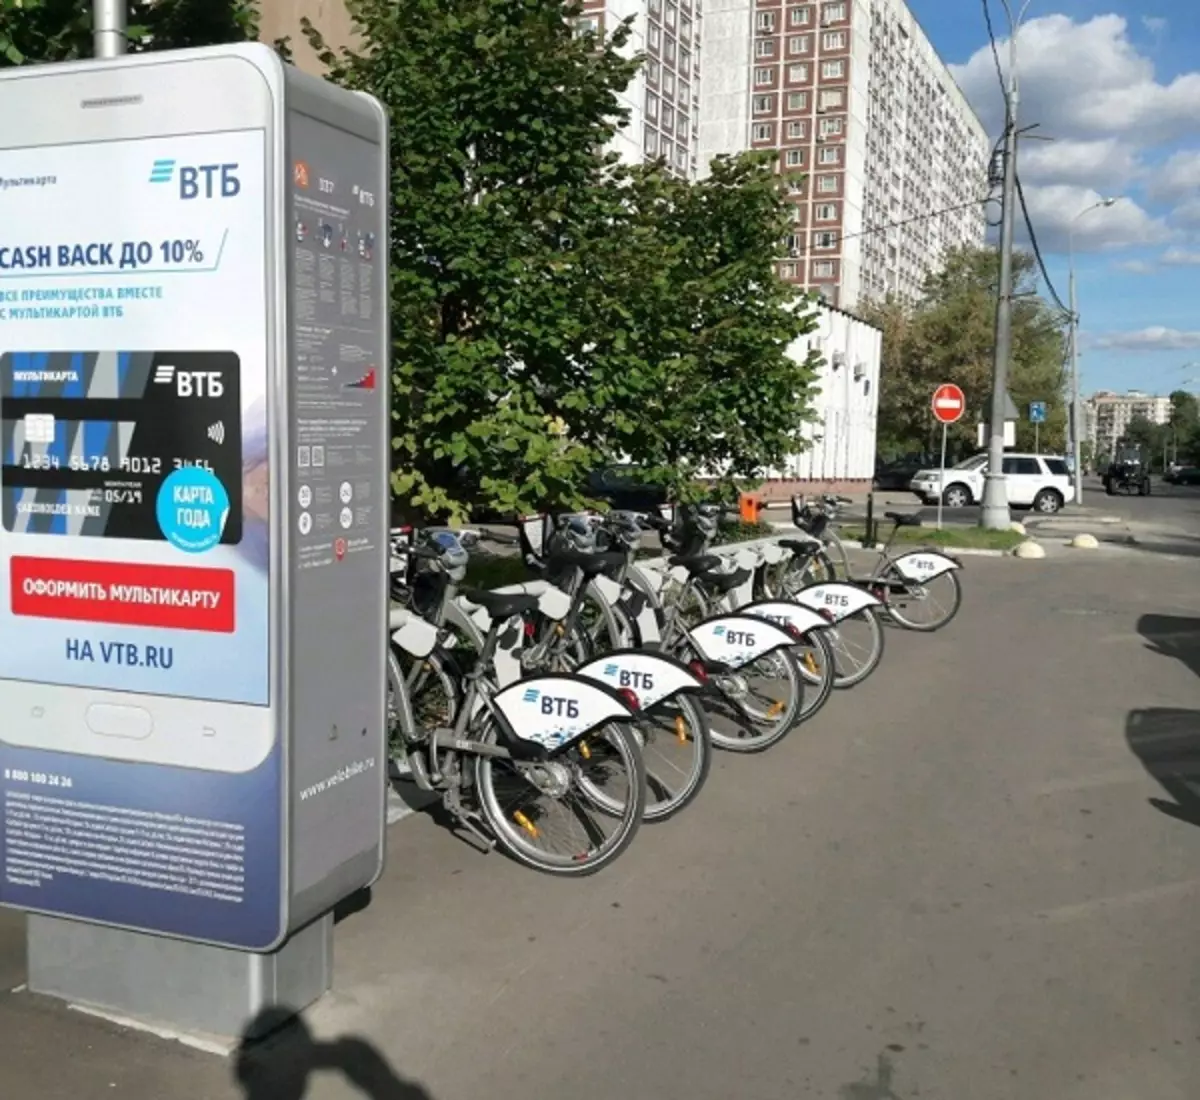 自行车VTB：如何使用自行车租赁？如何骑自行车并通过应用程序付款？ 8507_20